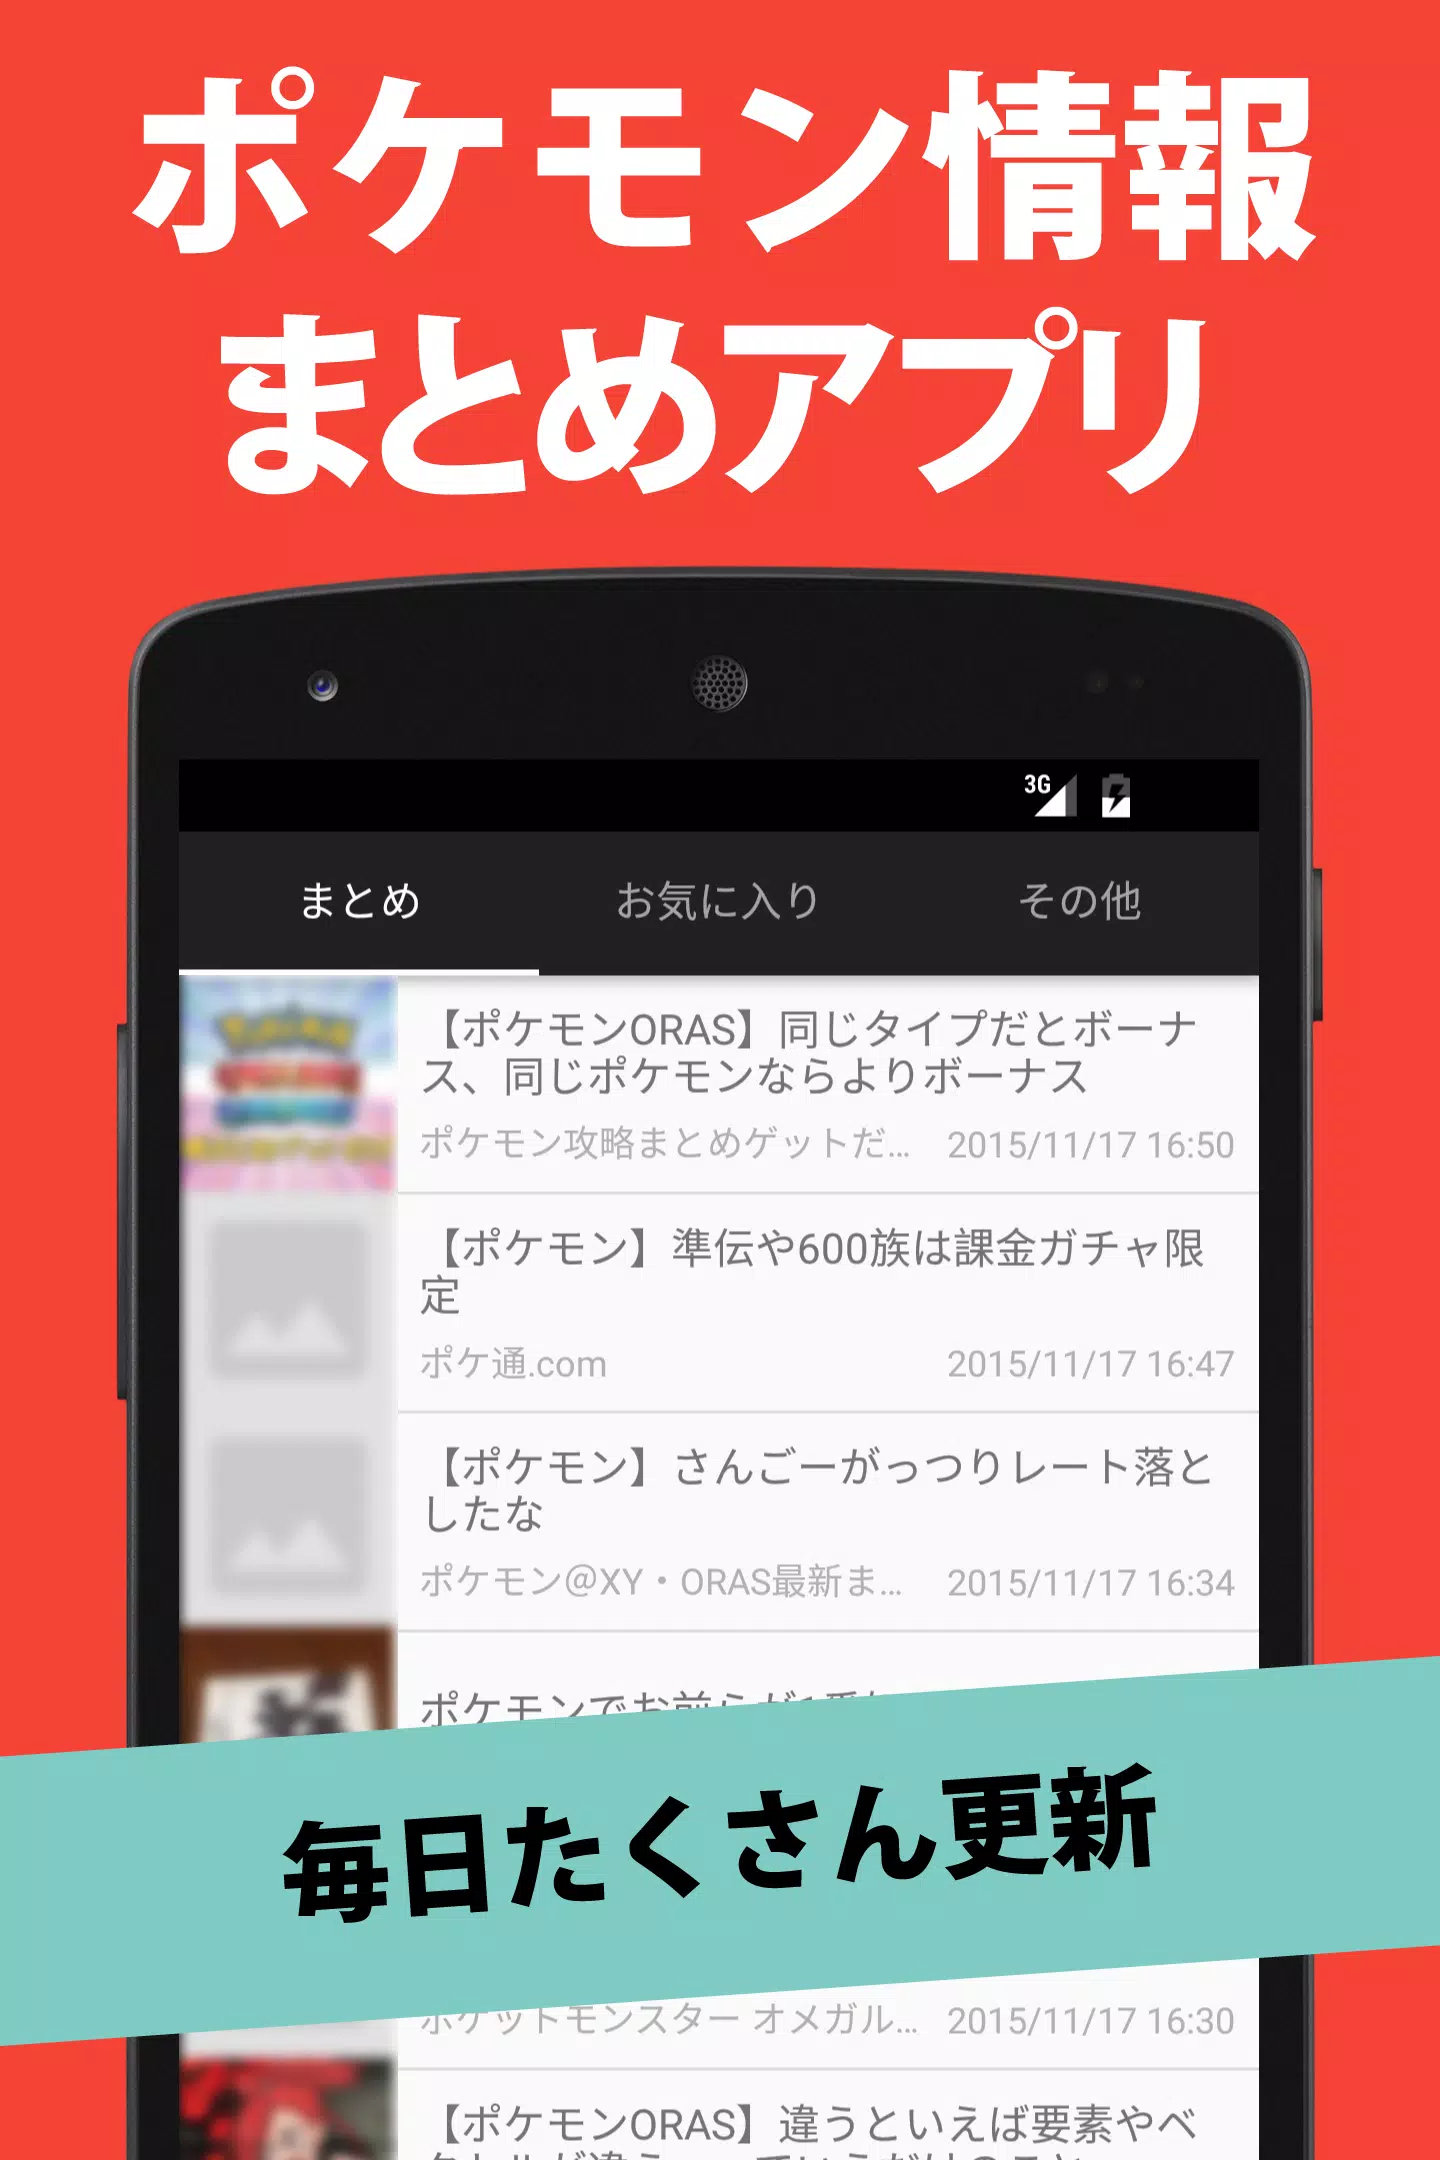 まとめ For ポケモン Apk For Android Download